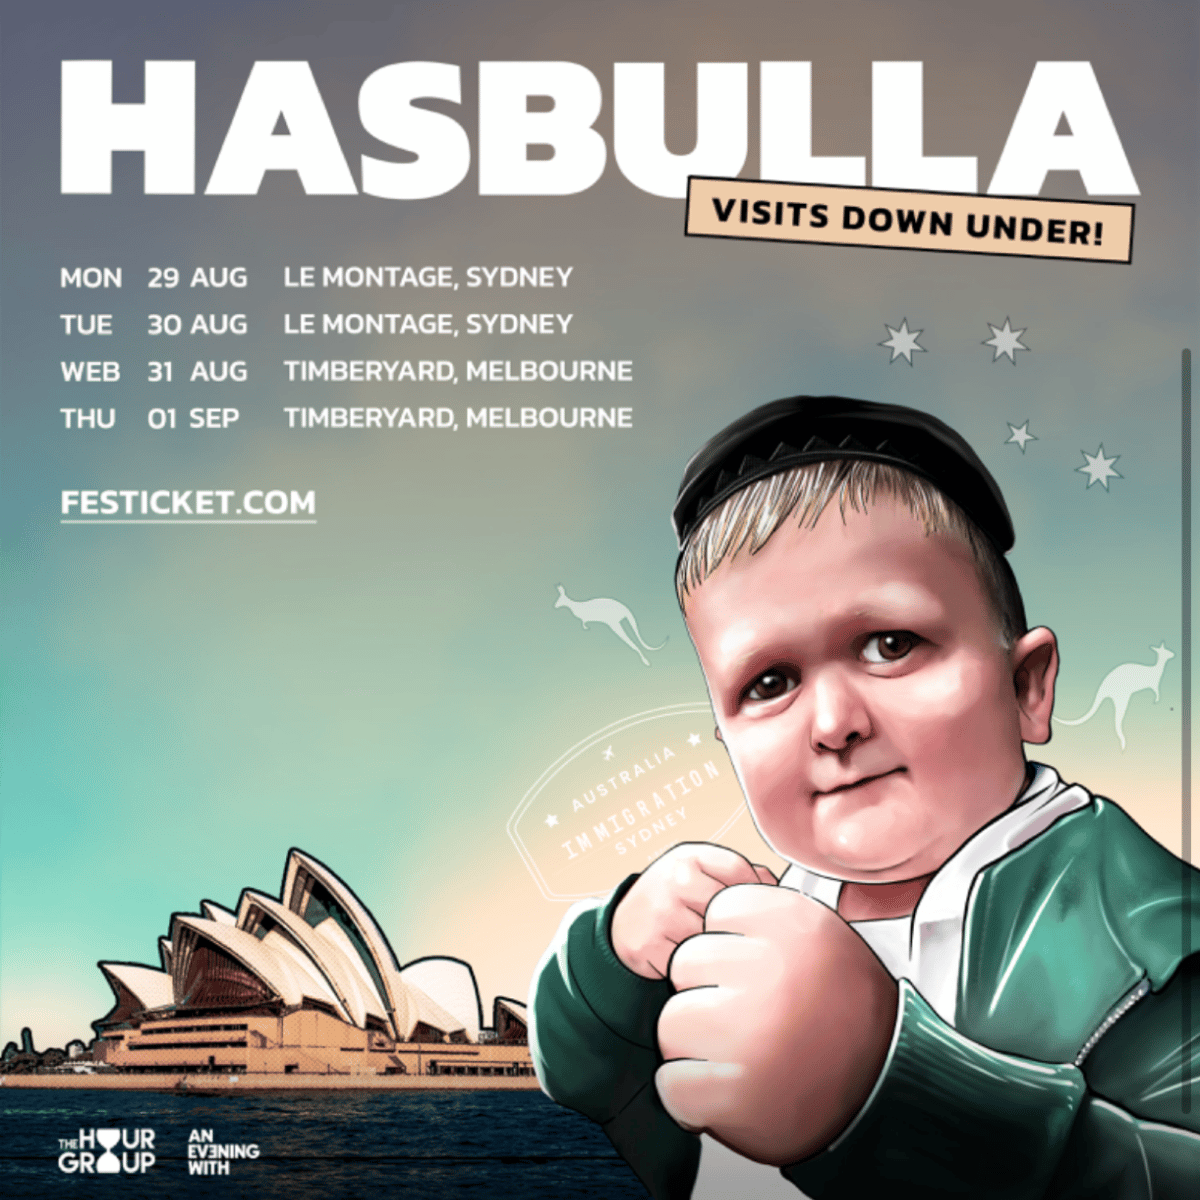 Hasbulla Avustralya Turu